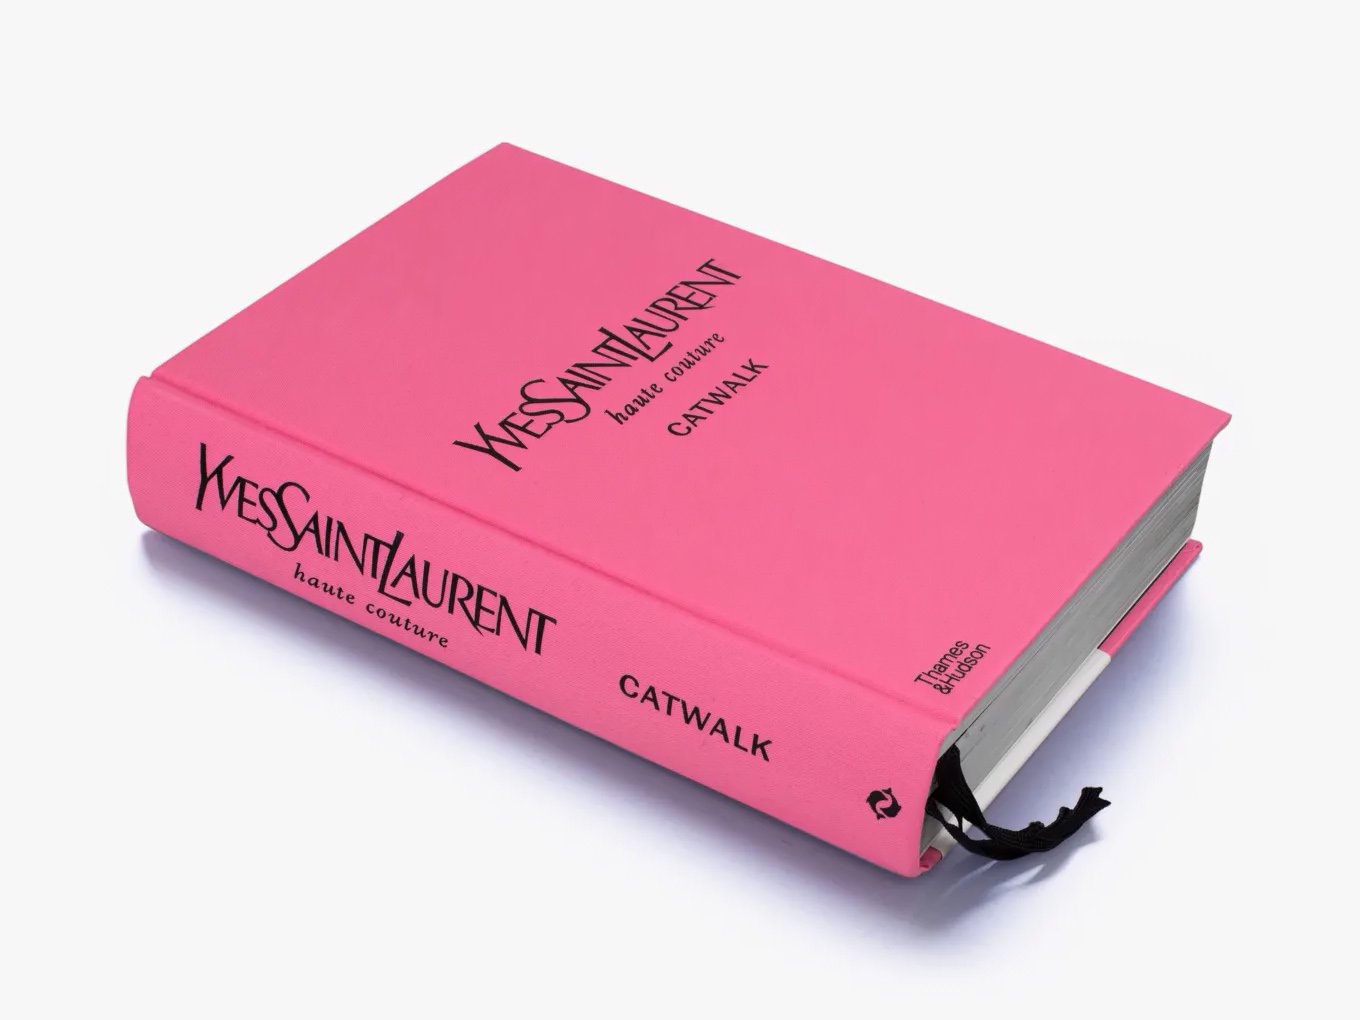 Livro Yves Saint Laurent